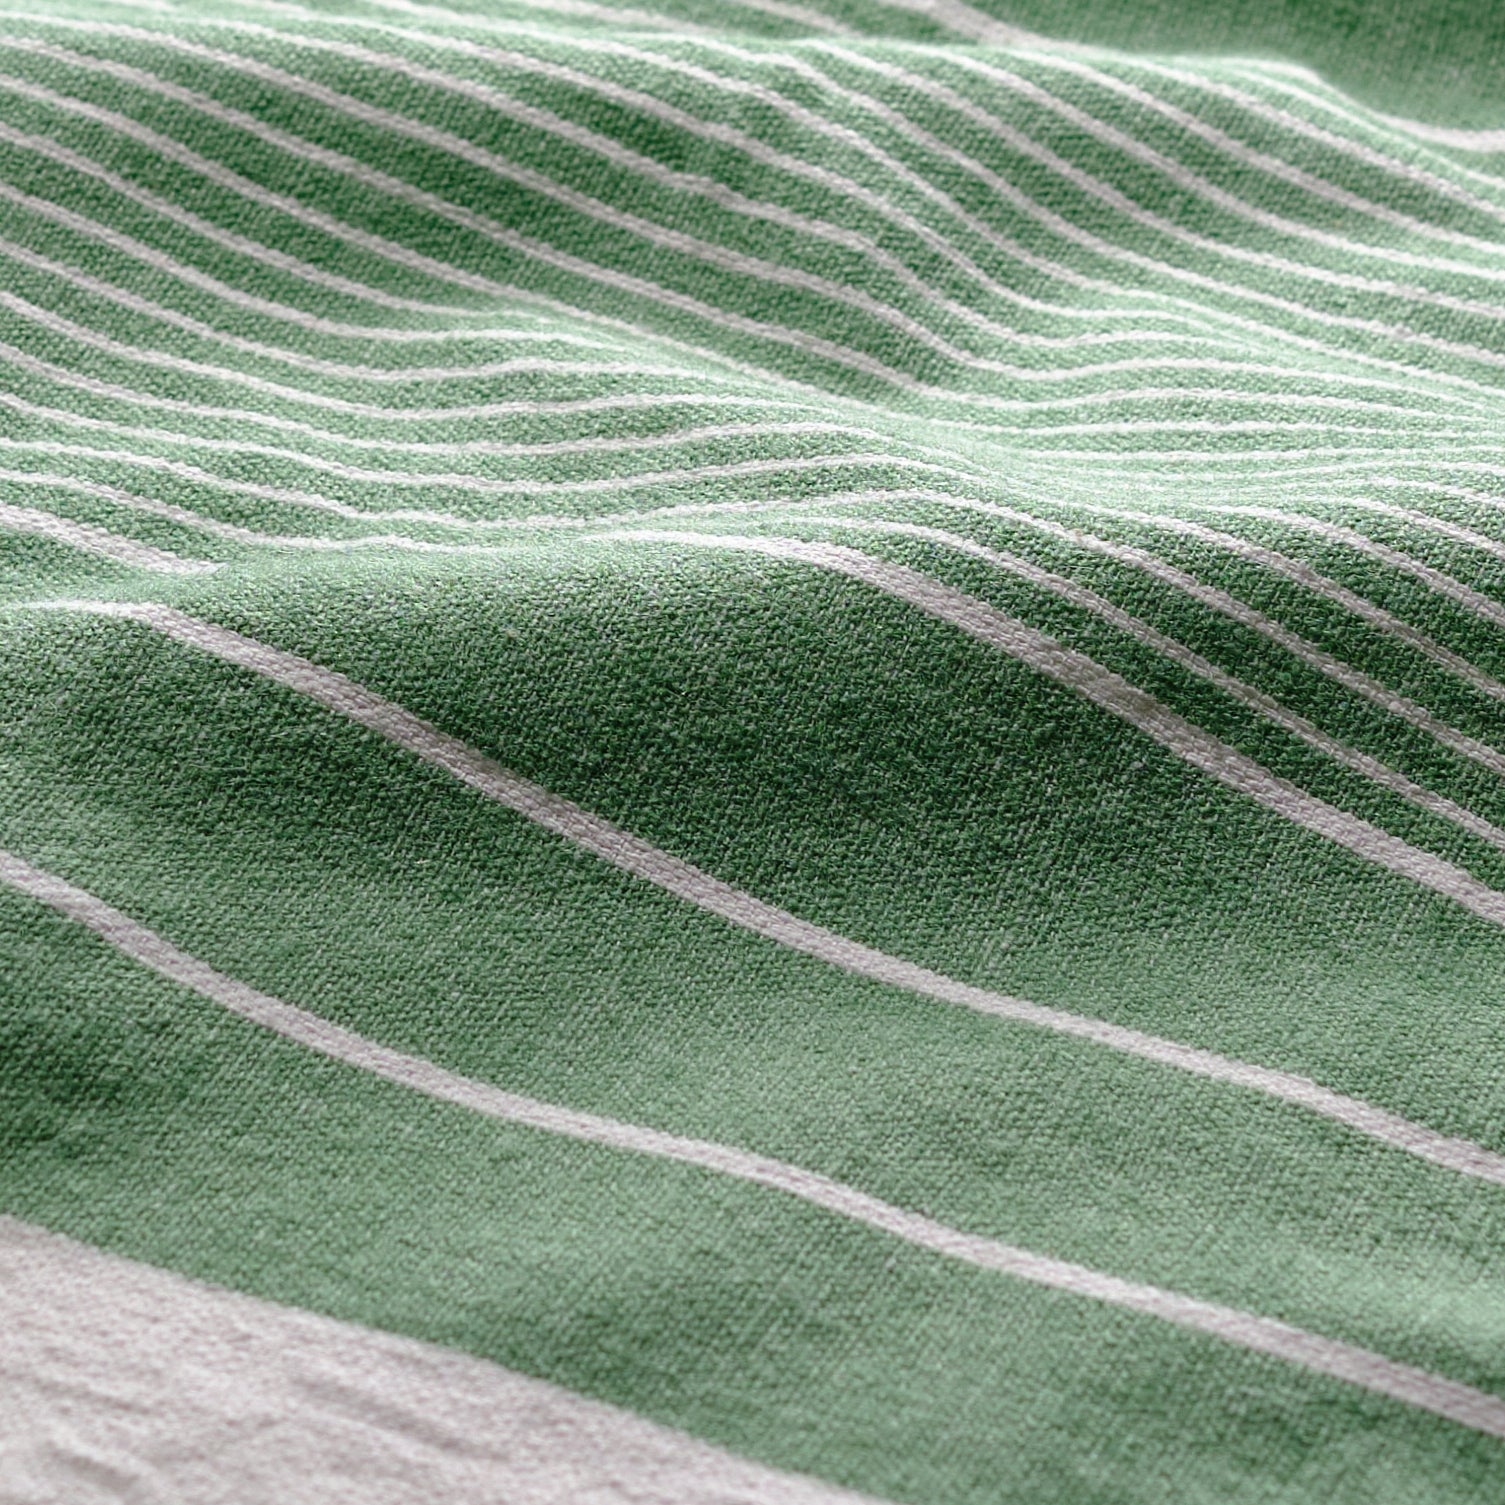 Woven Napkin (Set of Four) - Grass Mixed Stripe